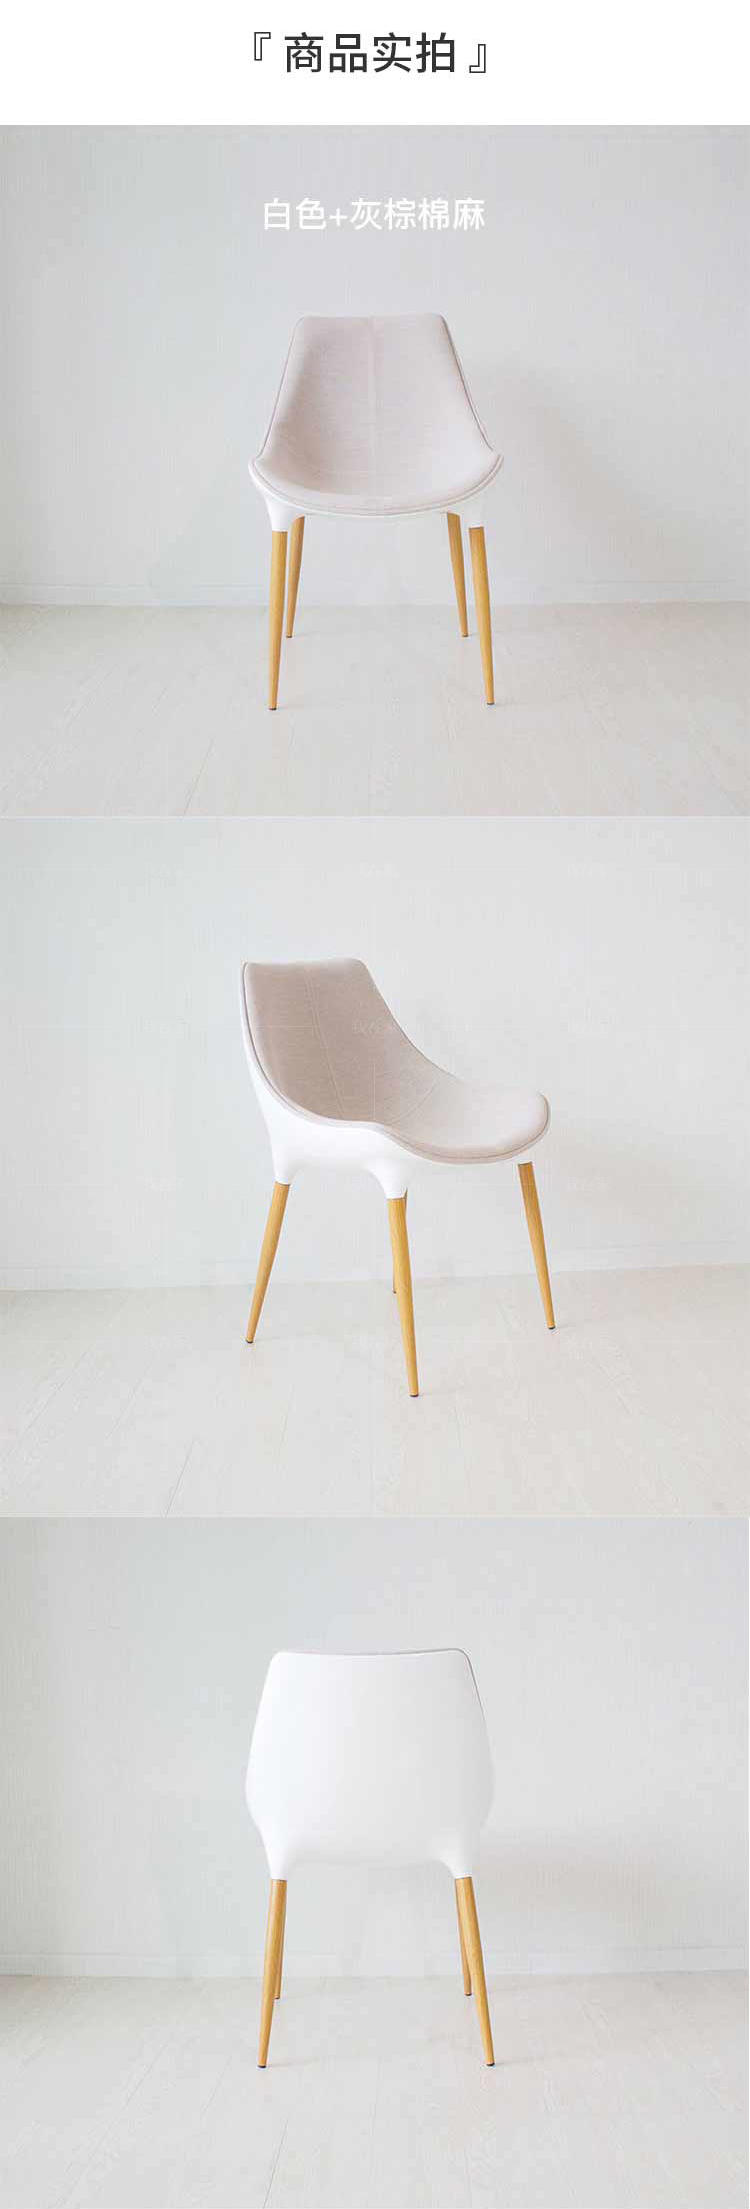 色彩北欧风格Langham餐椅的家具详细介绍